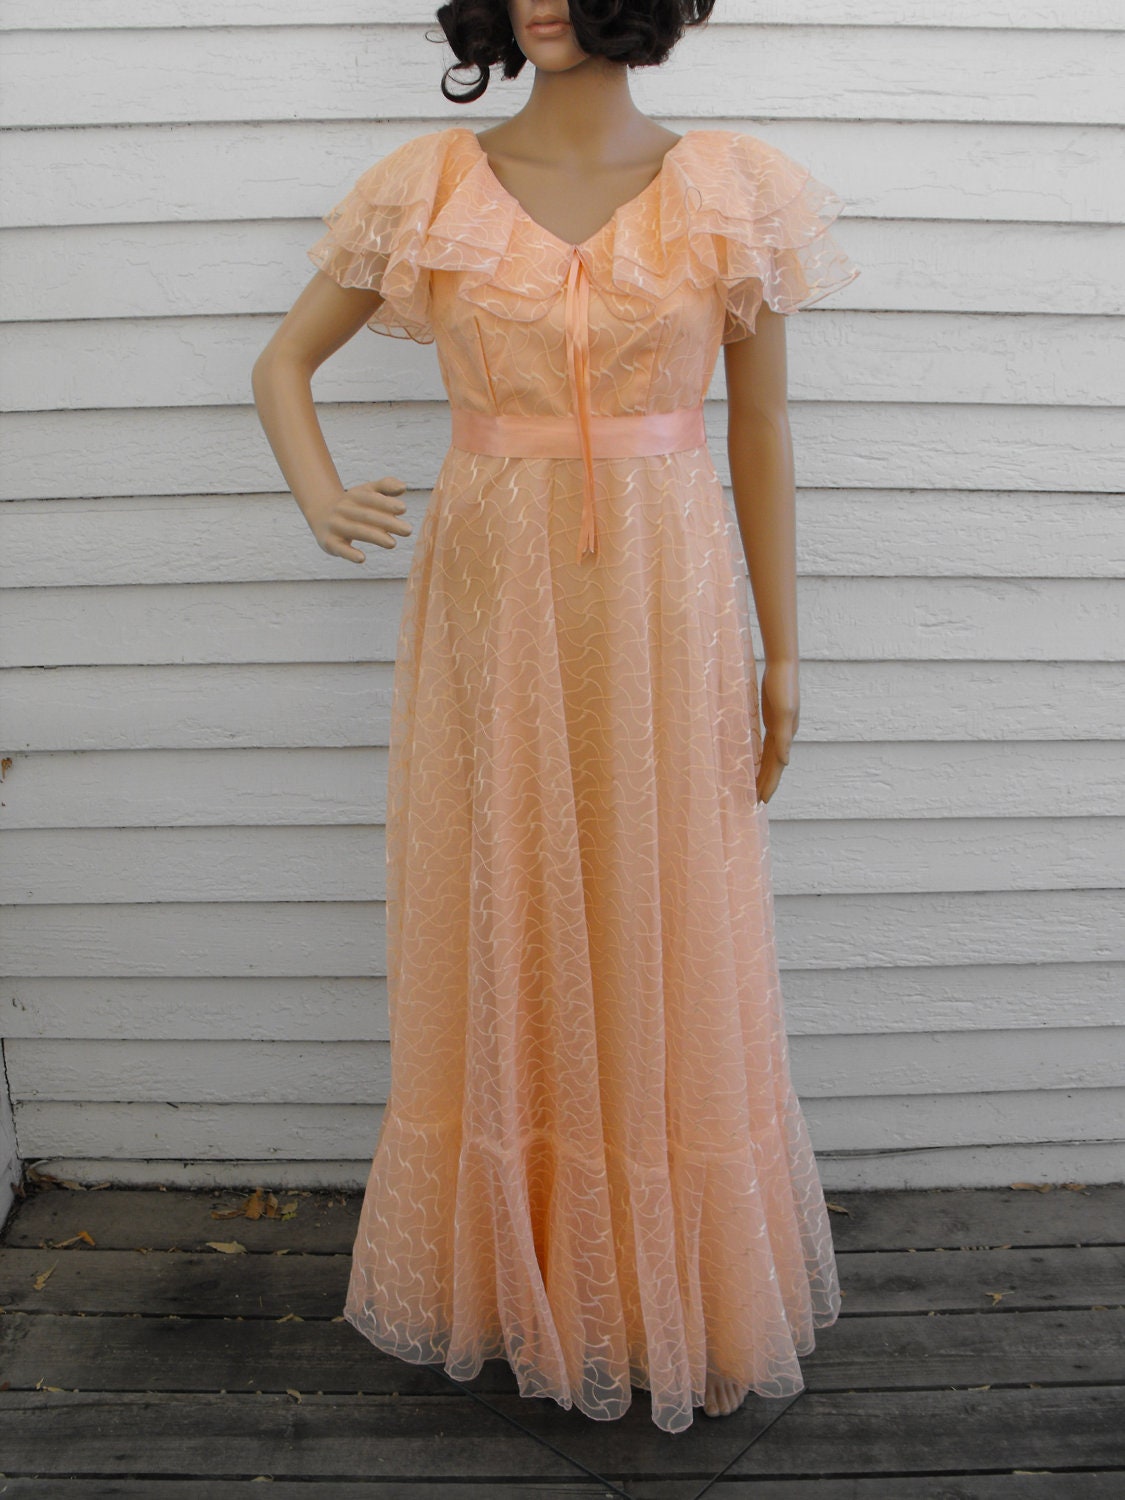 peach gown